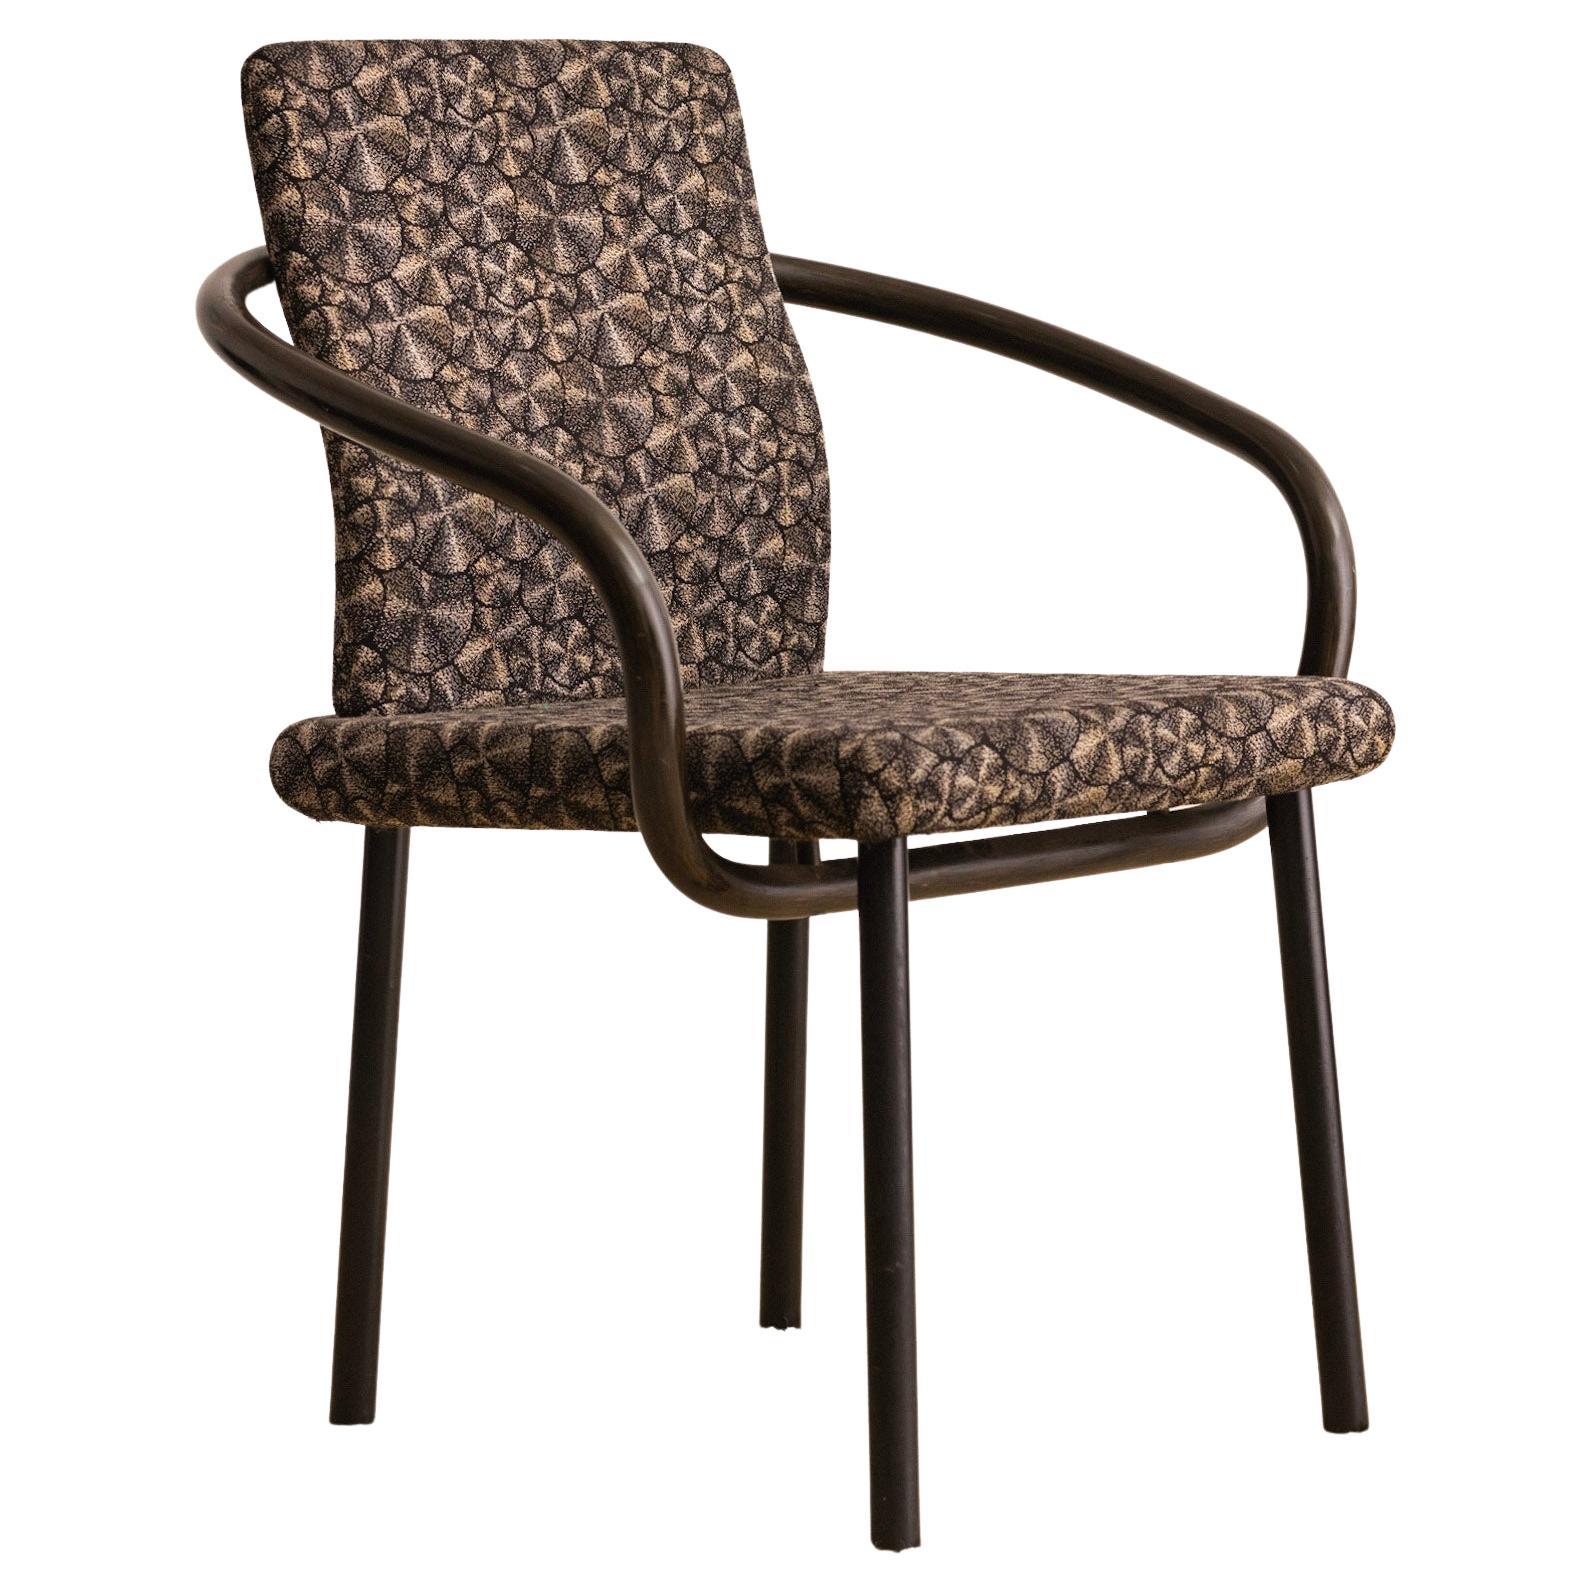 Ettore Sottsass Mandarin Chair For Knoll